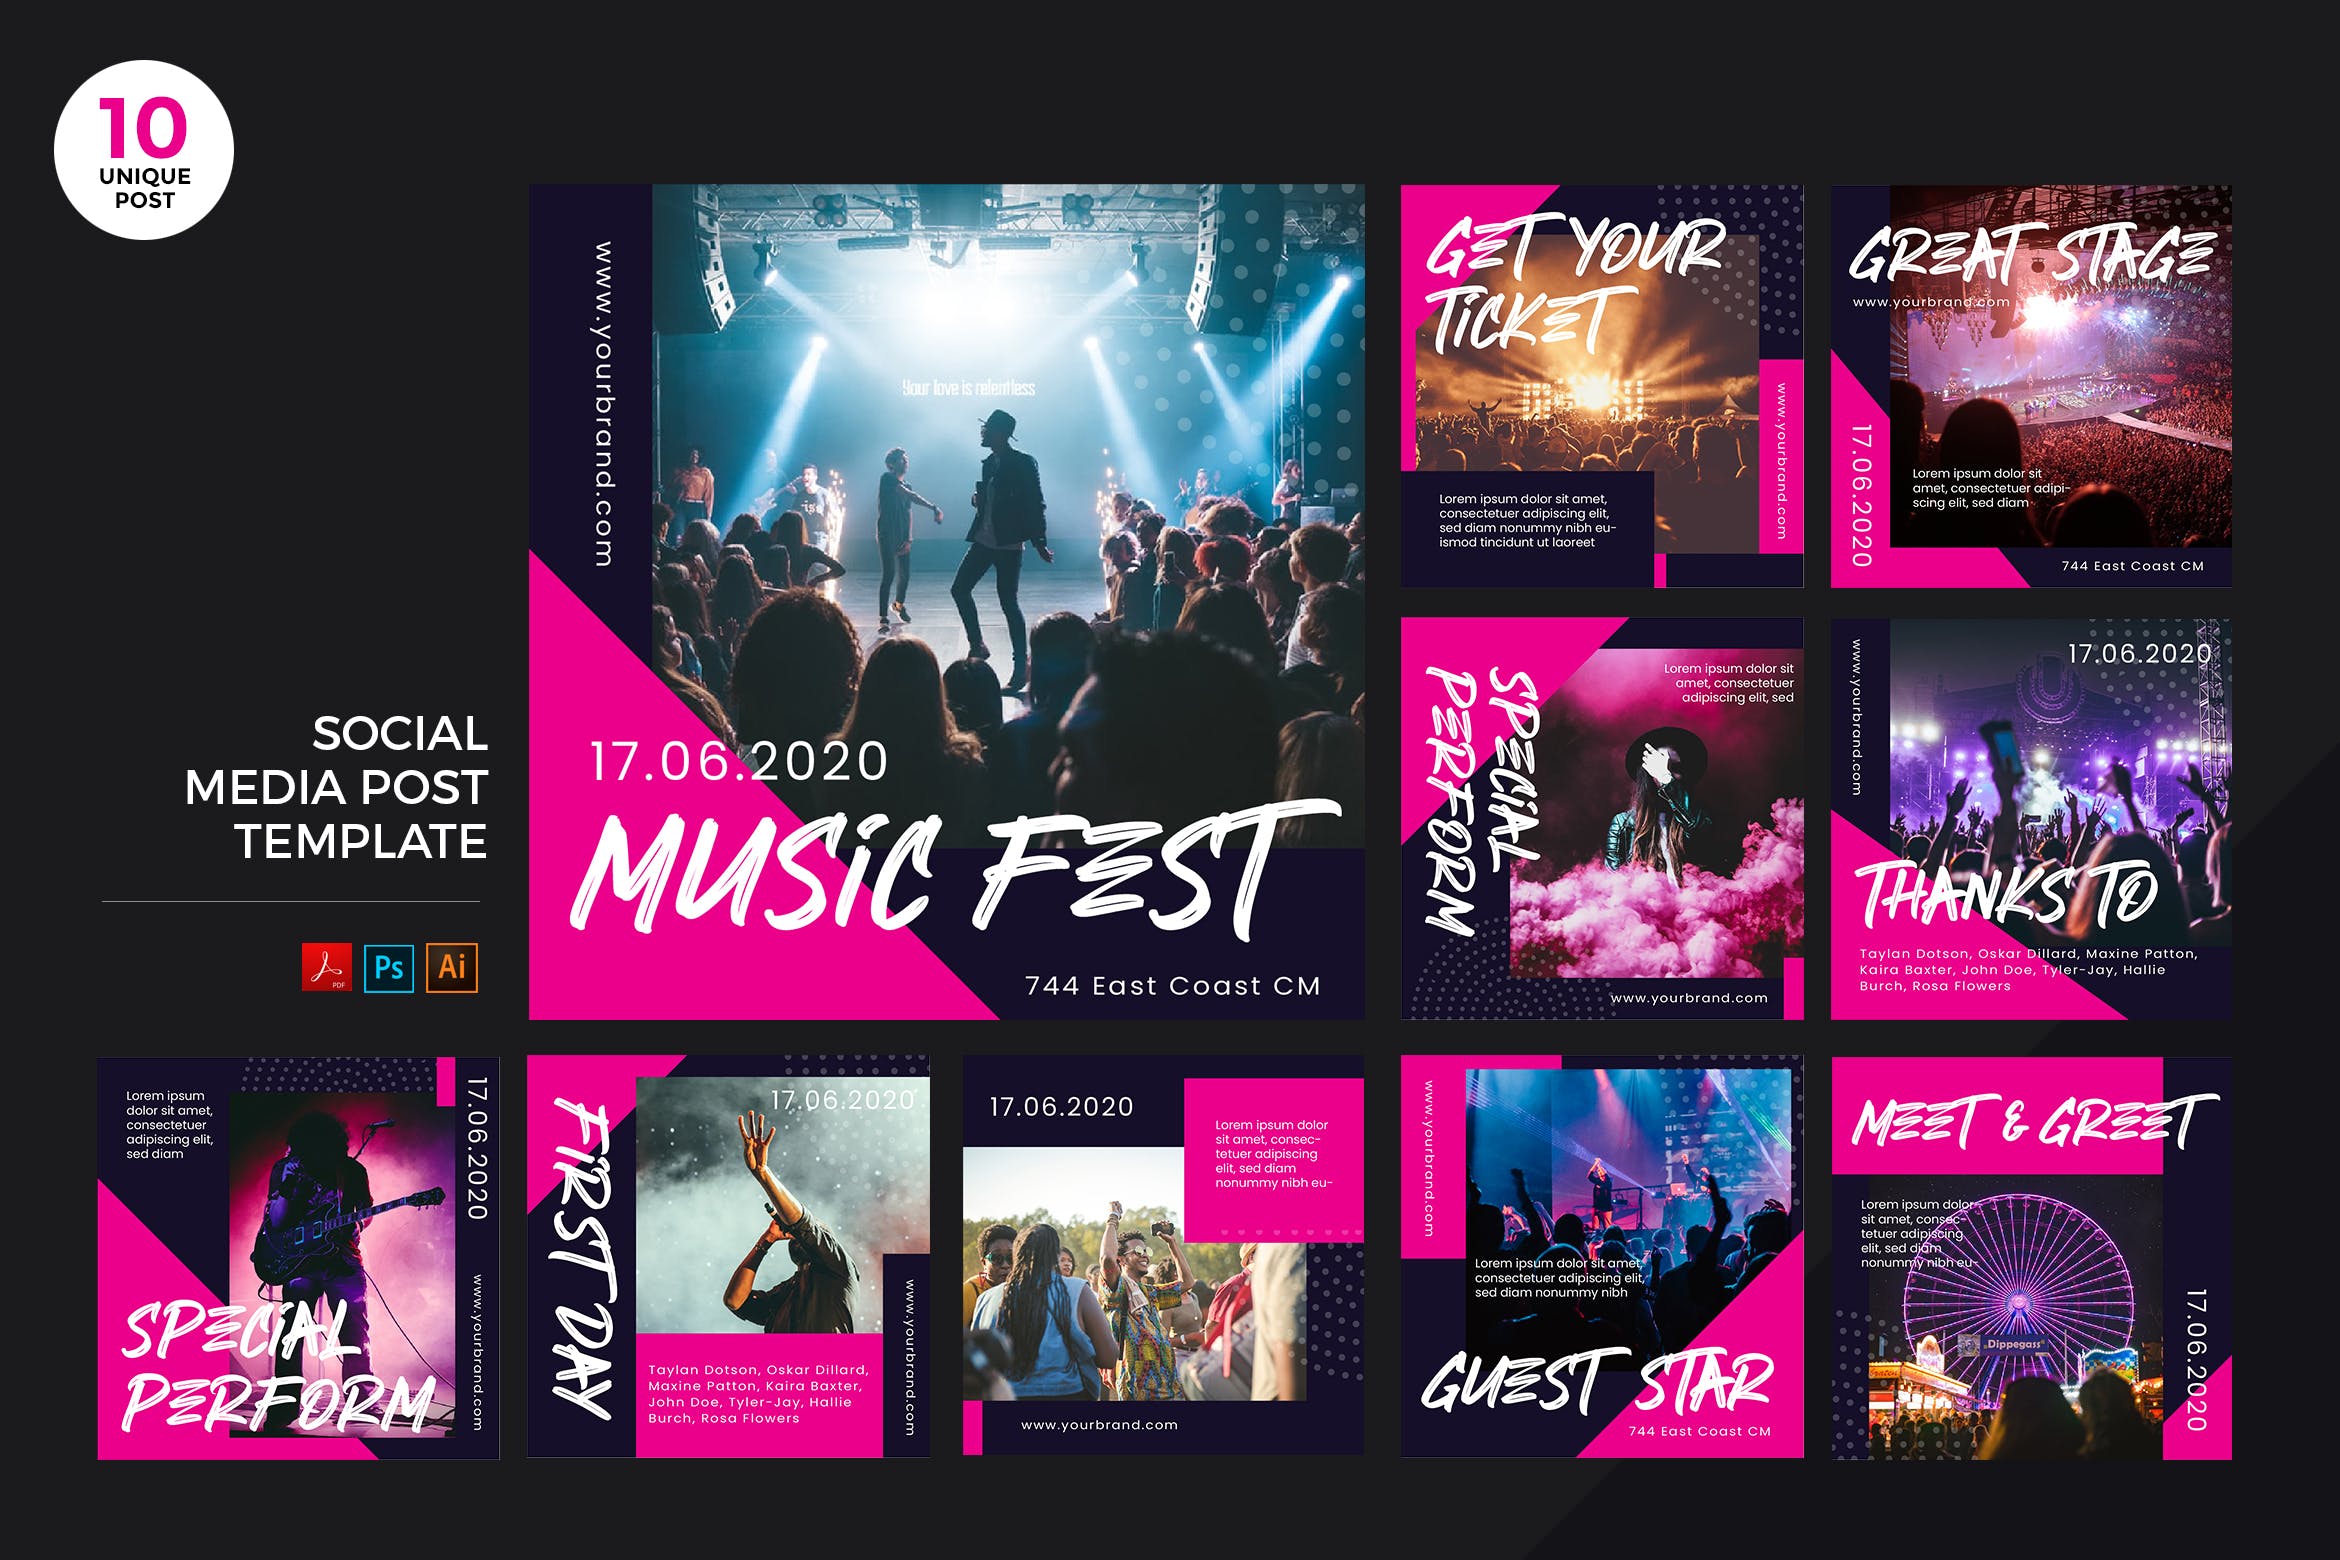 音乐节宣传社交媒体设计素材包 Music Festival Social Media Kit PSD & AI插图